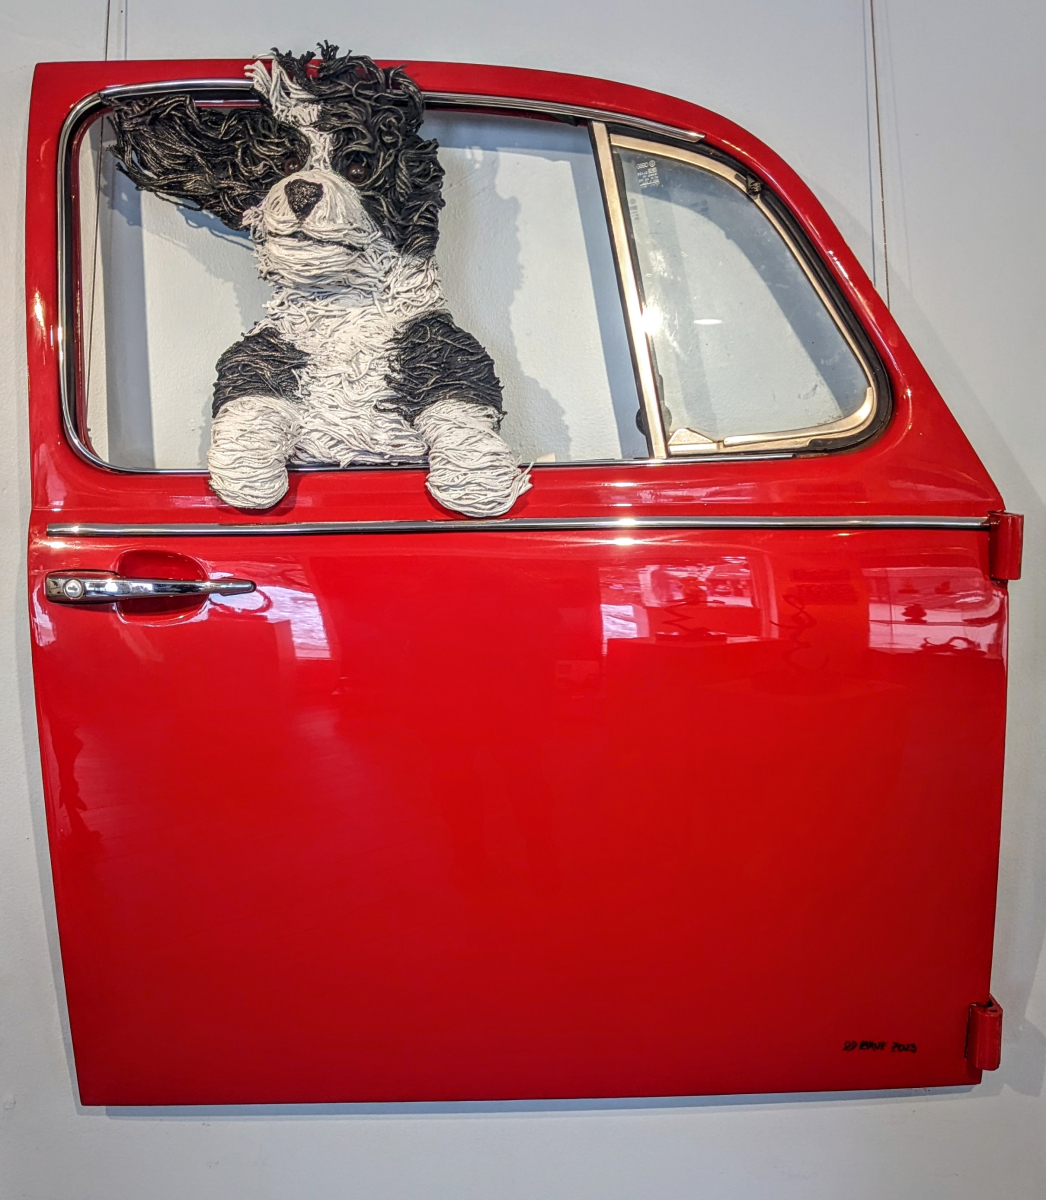 Sheepdog in Red VW Door